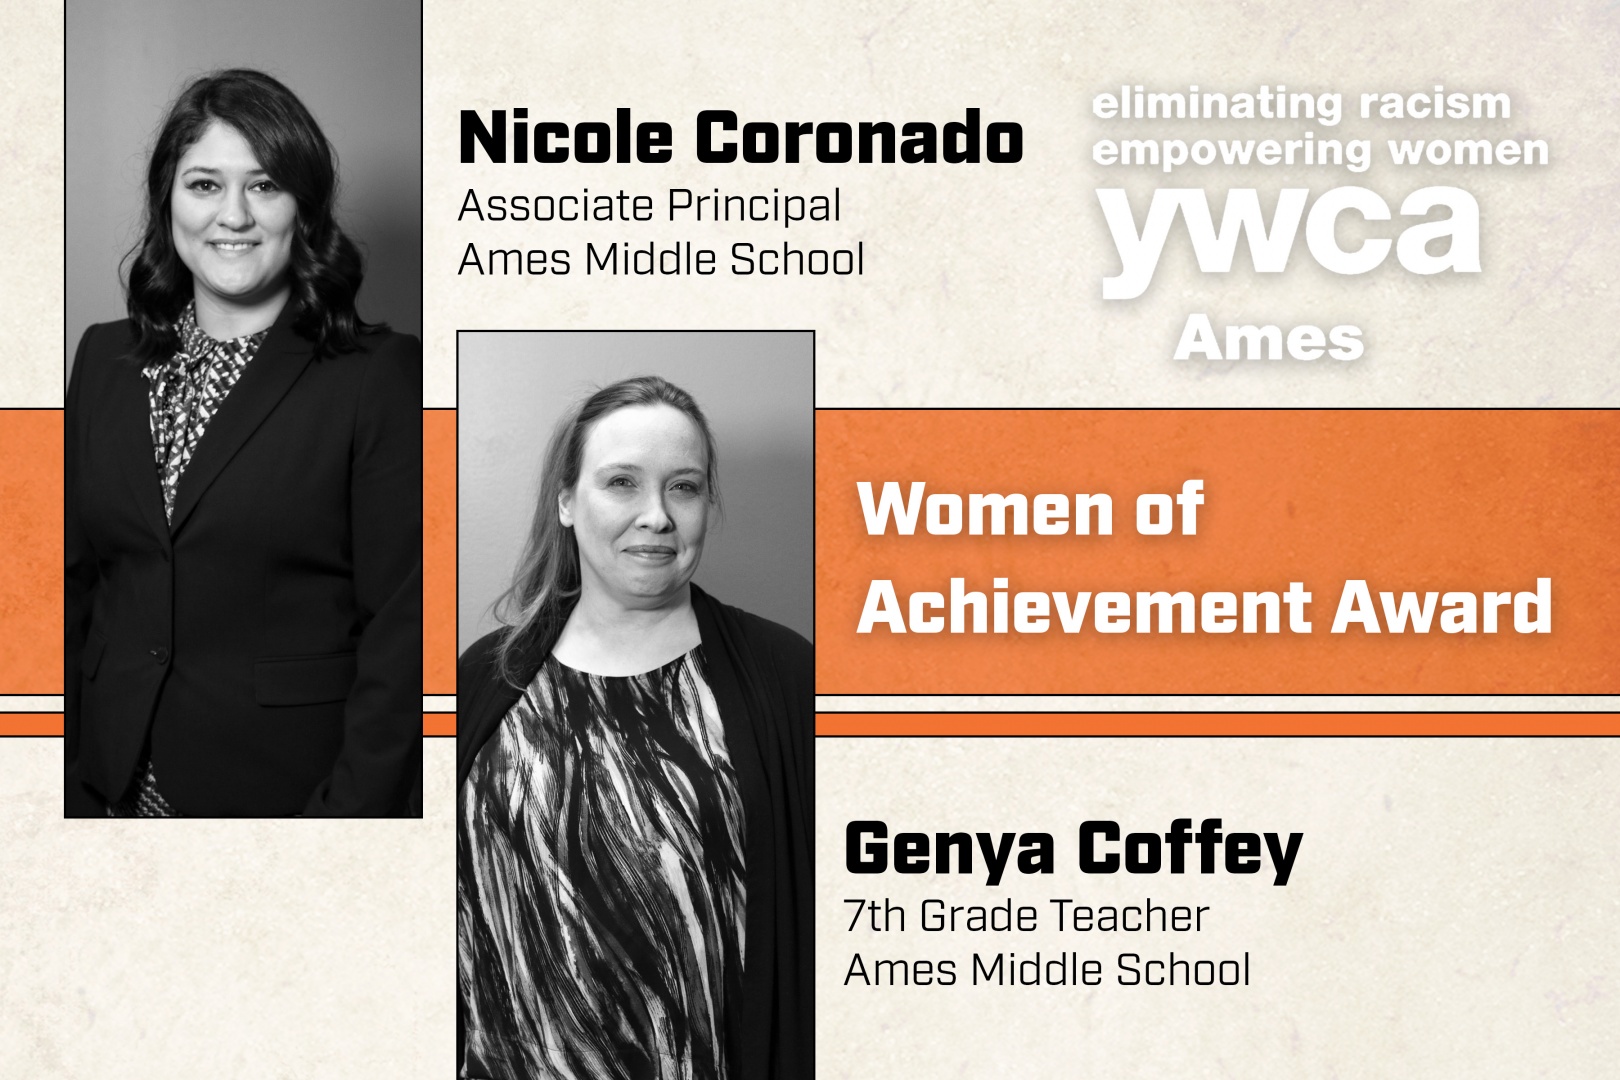 YWCA Women of Achievement